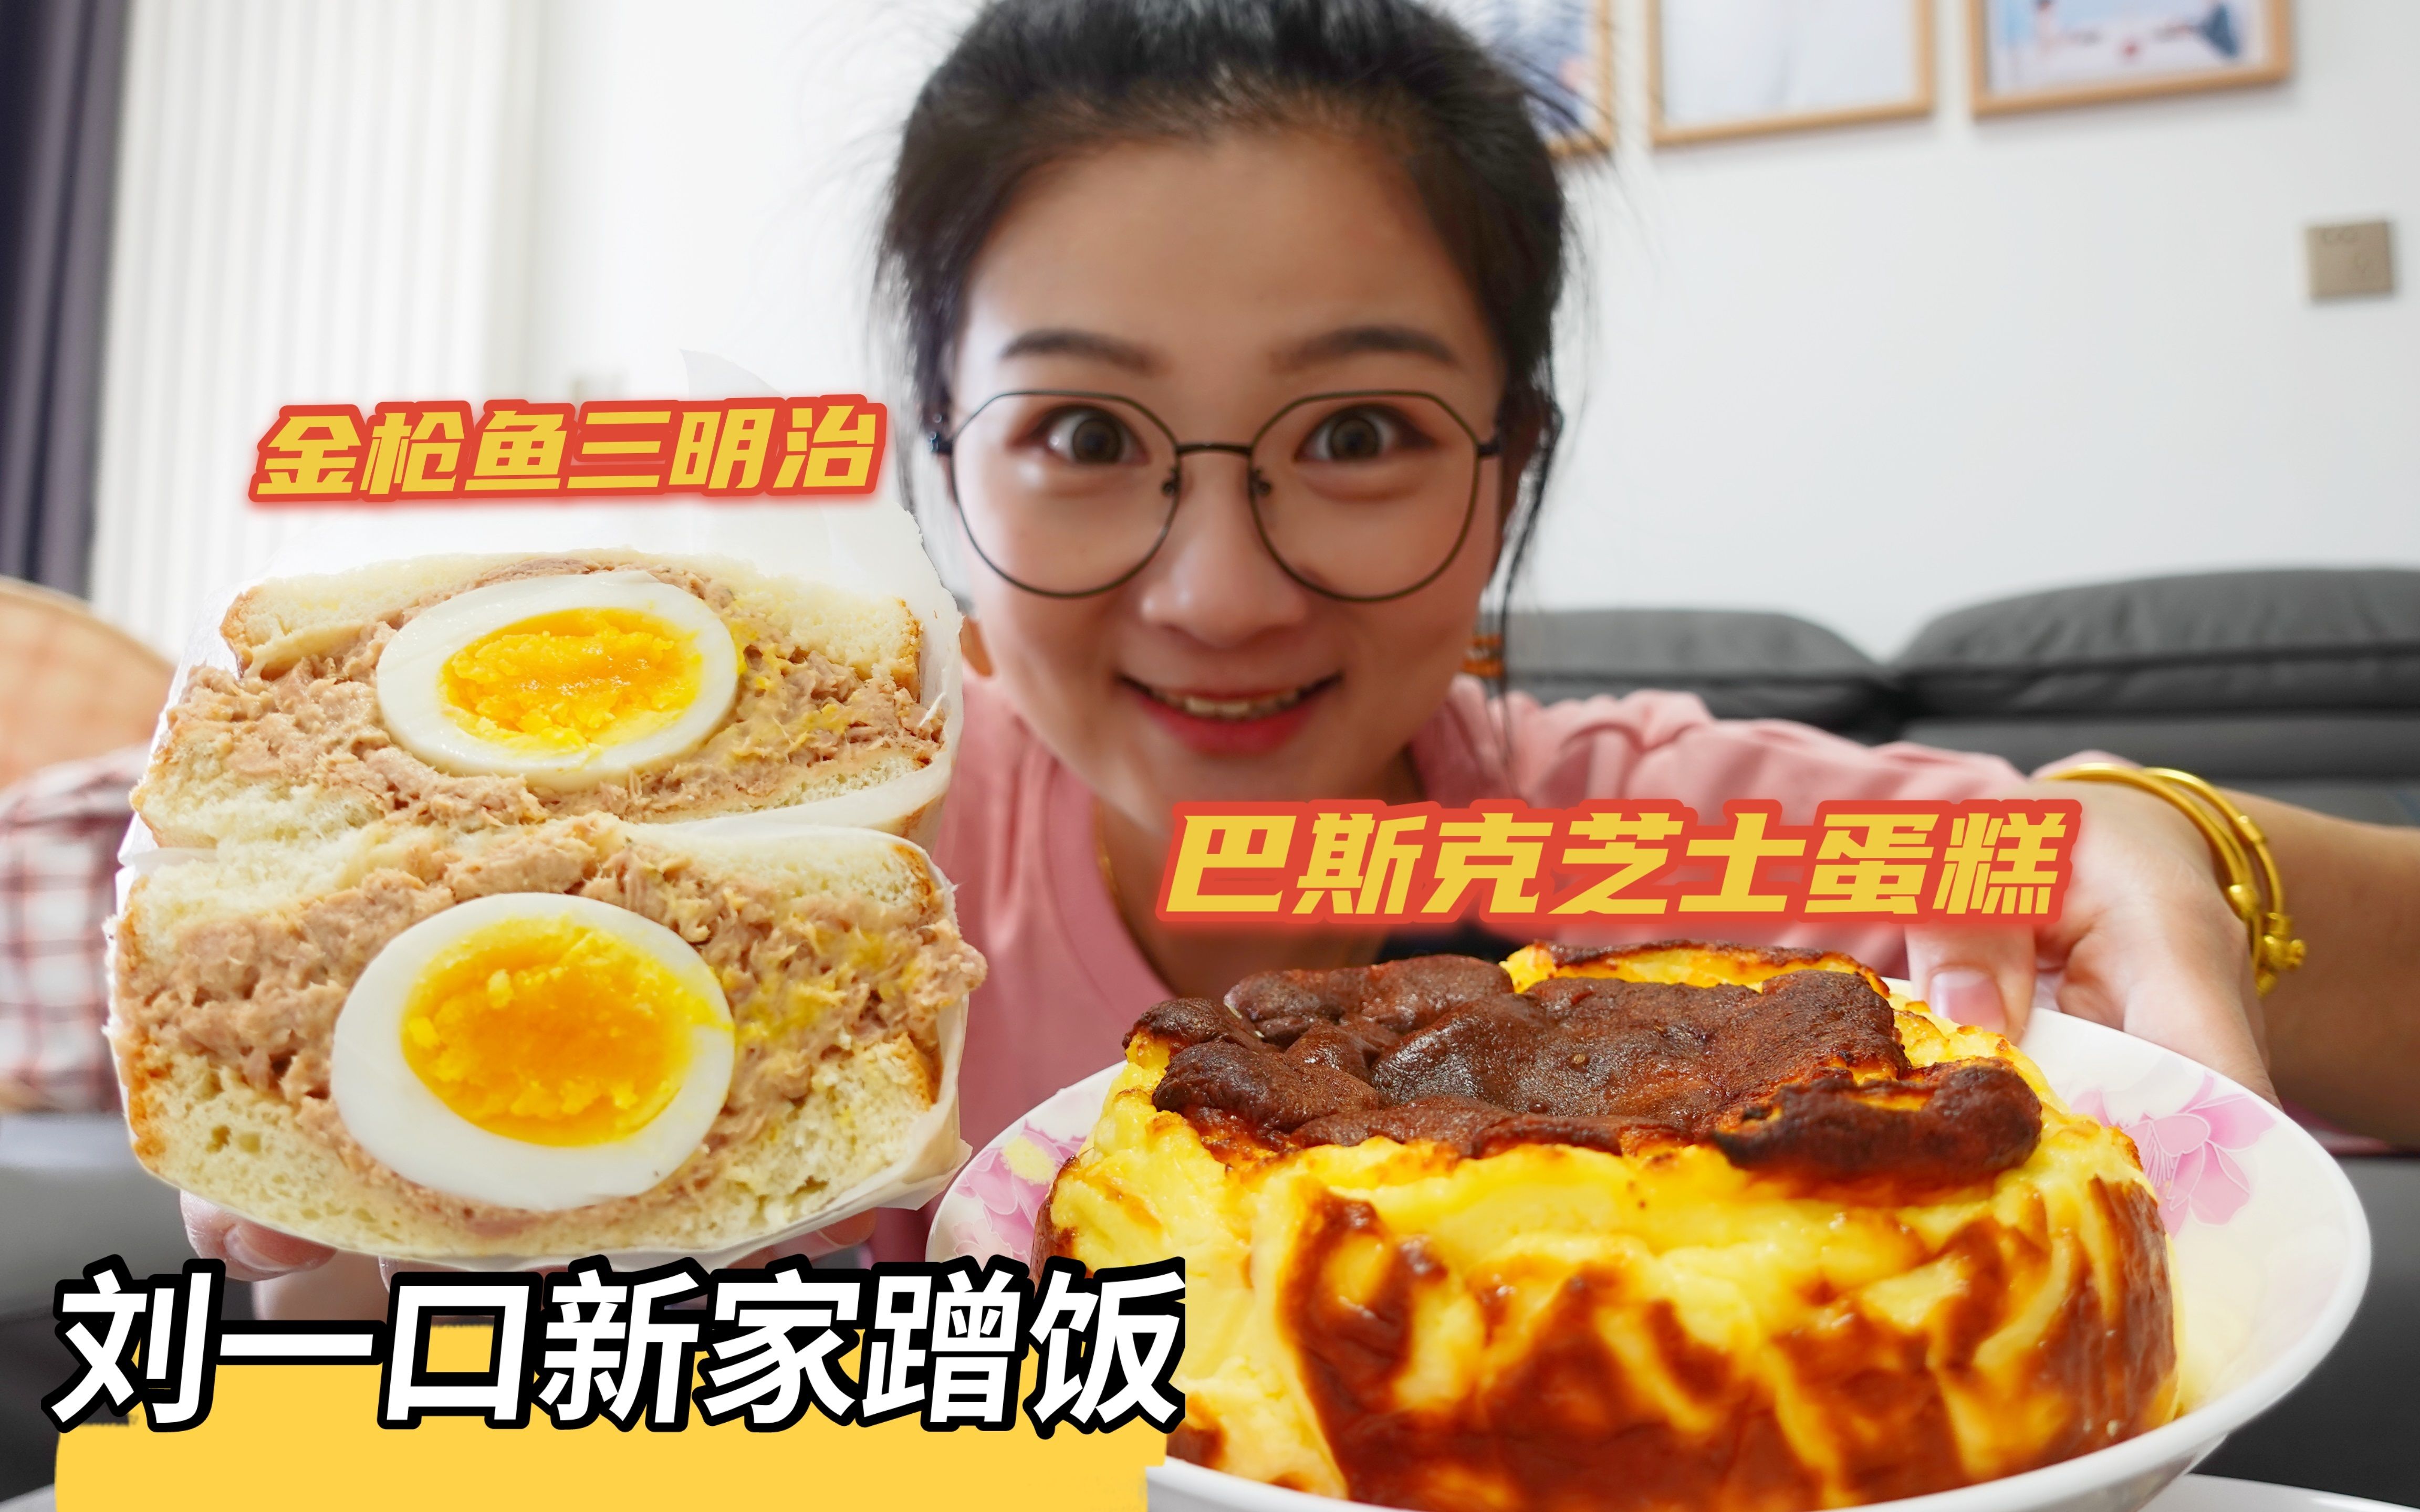 【吃喝vlog】刘一口新家蹭饭！烤肉卷、芝士蛋糕、炖五花肉一大锅